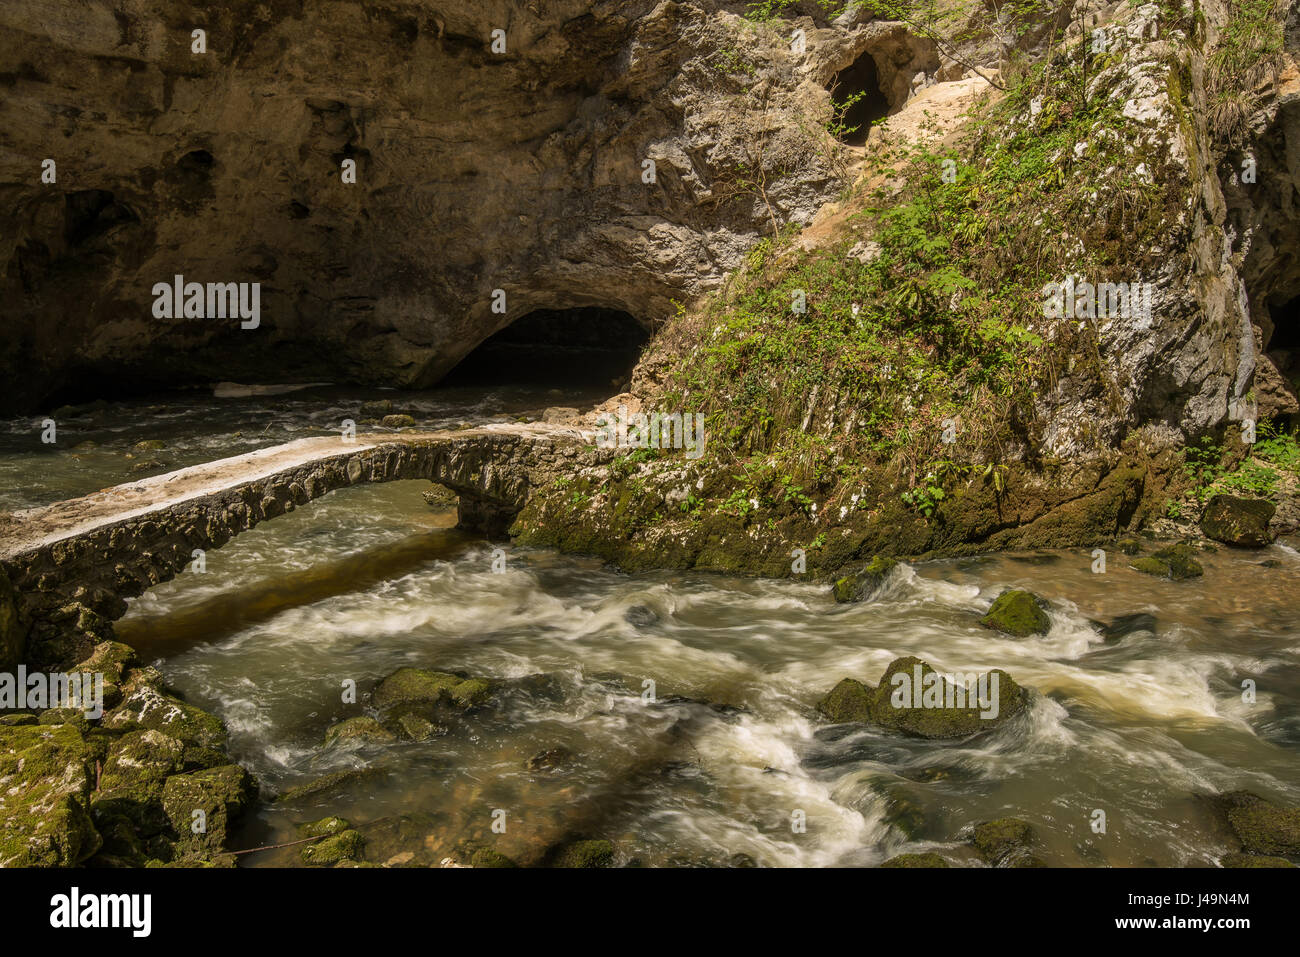 Scenic underground river Rak in Unesco protected national park Rakov Skocjan in Slovenia Stock Photo